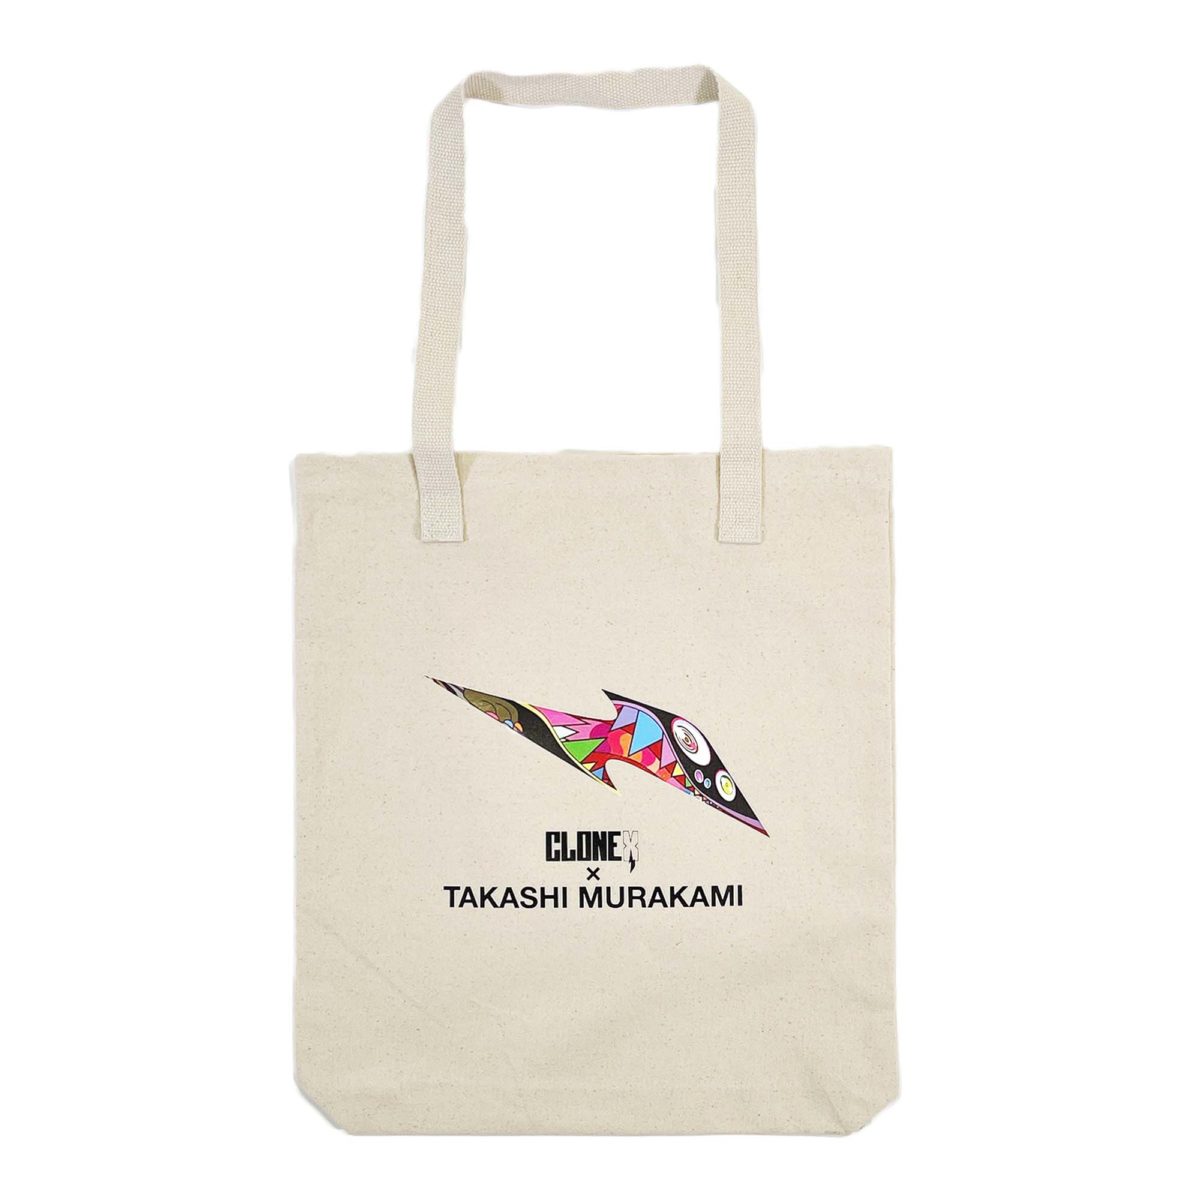 Takashi Murakami x Perrier Tote Bag